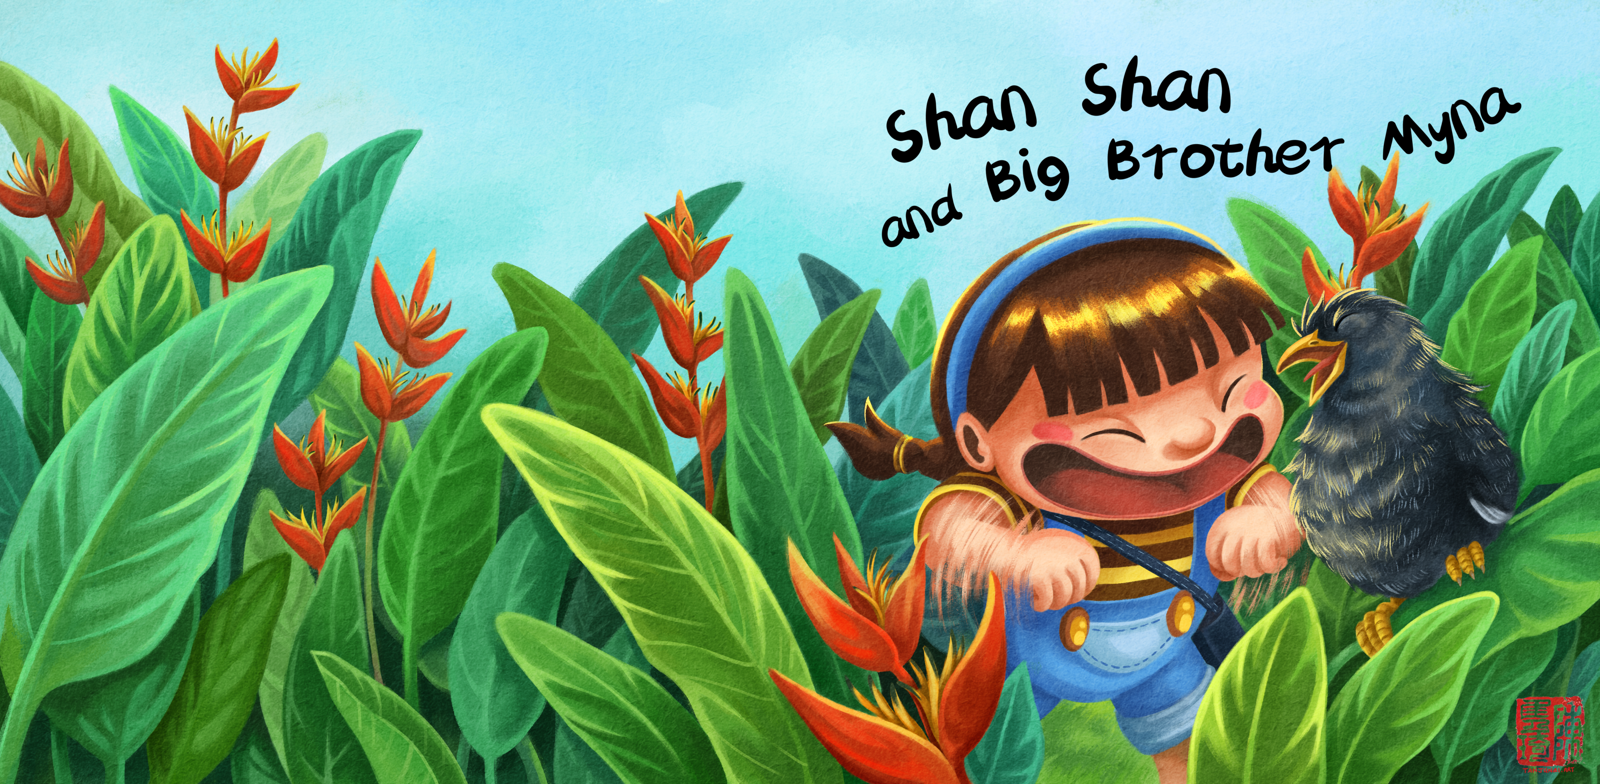 《和珊珊一起成长》的儿童绘本系列的第三本书 《珊珊和八哥哥》的封面插画设计(英文版)。珊珊站在赫蕉丛林中拍着手臂和八哥哥一起开开心心地唱歌。